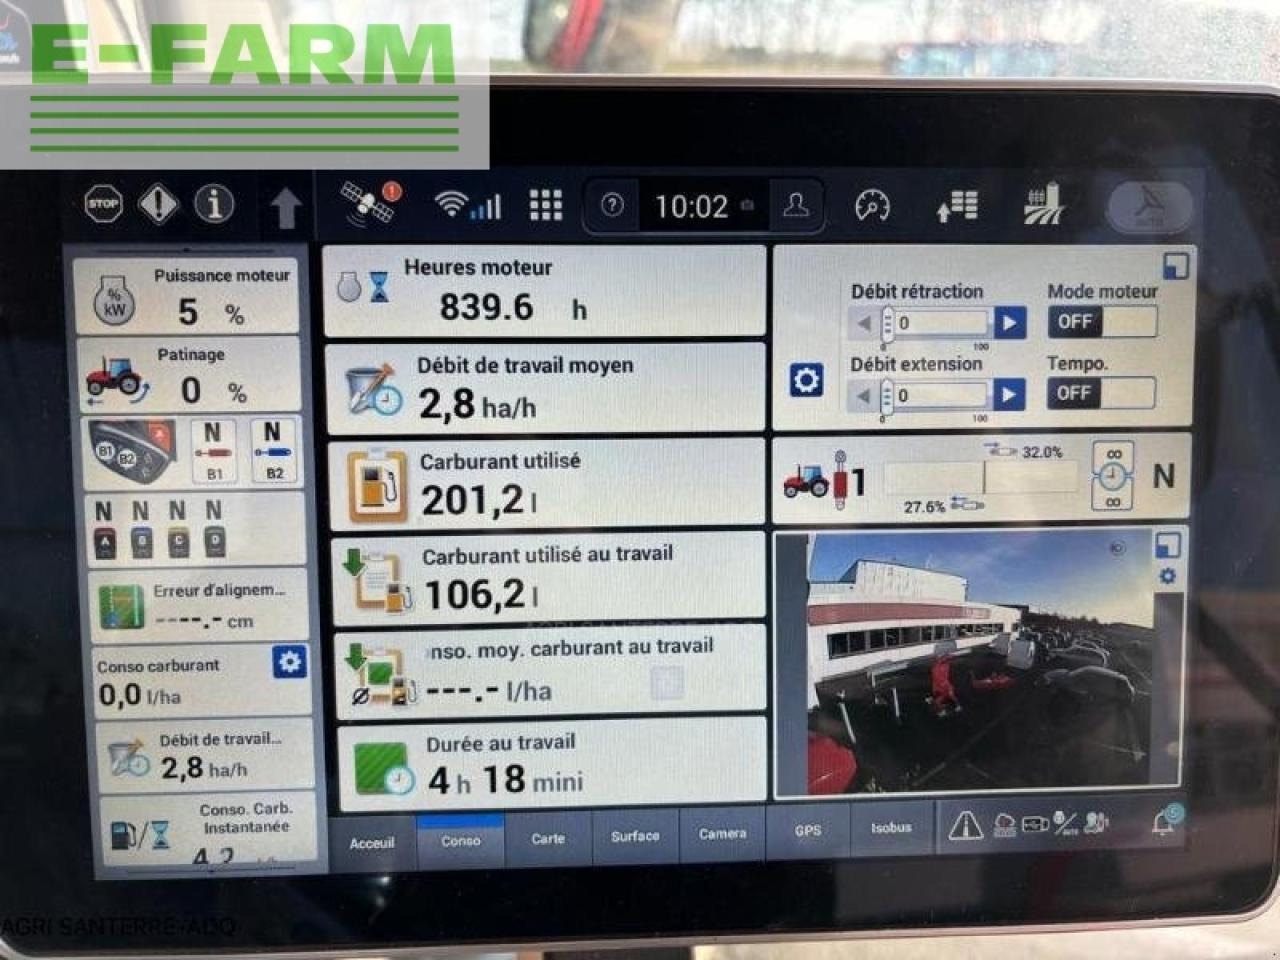 Farm tractor Case-IH optum 250 cvx: picture 4